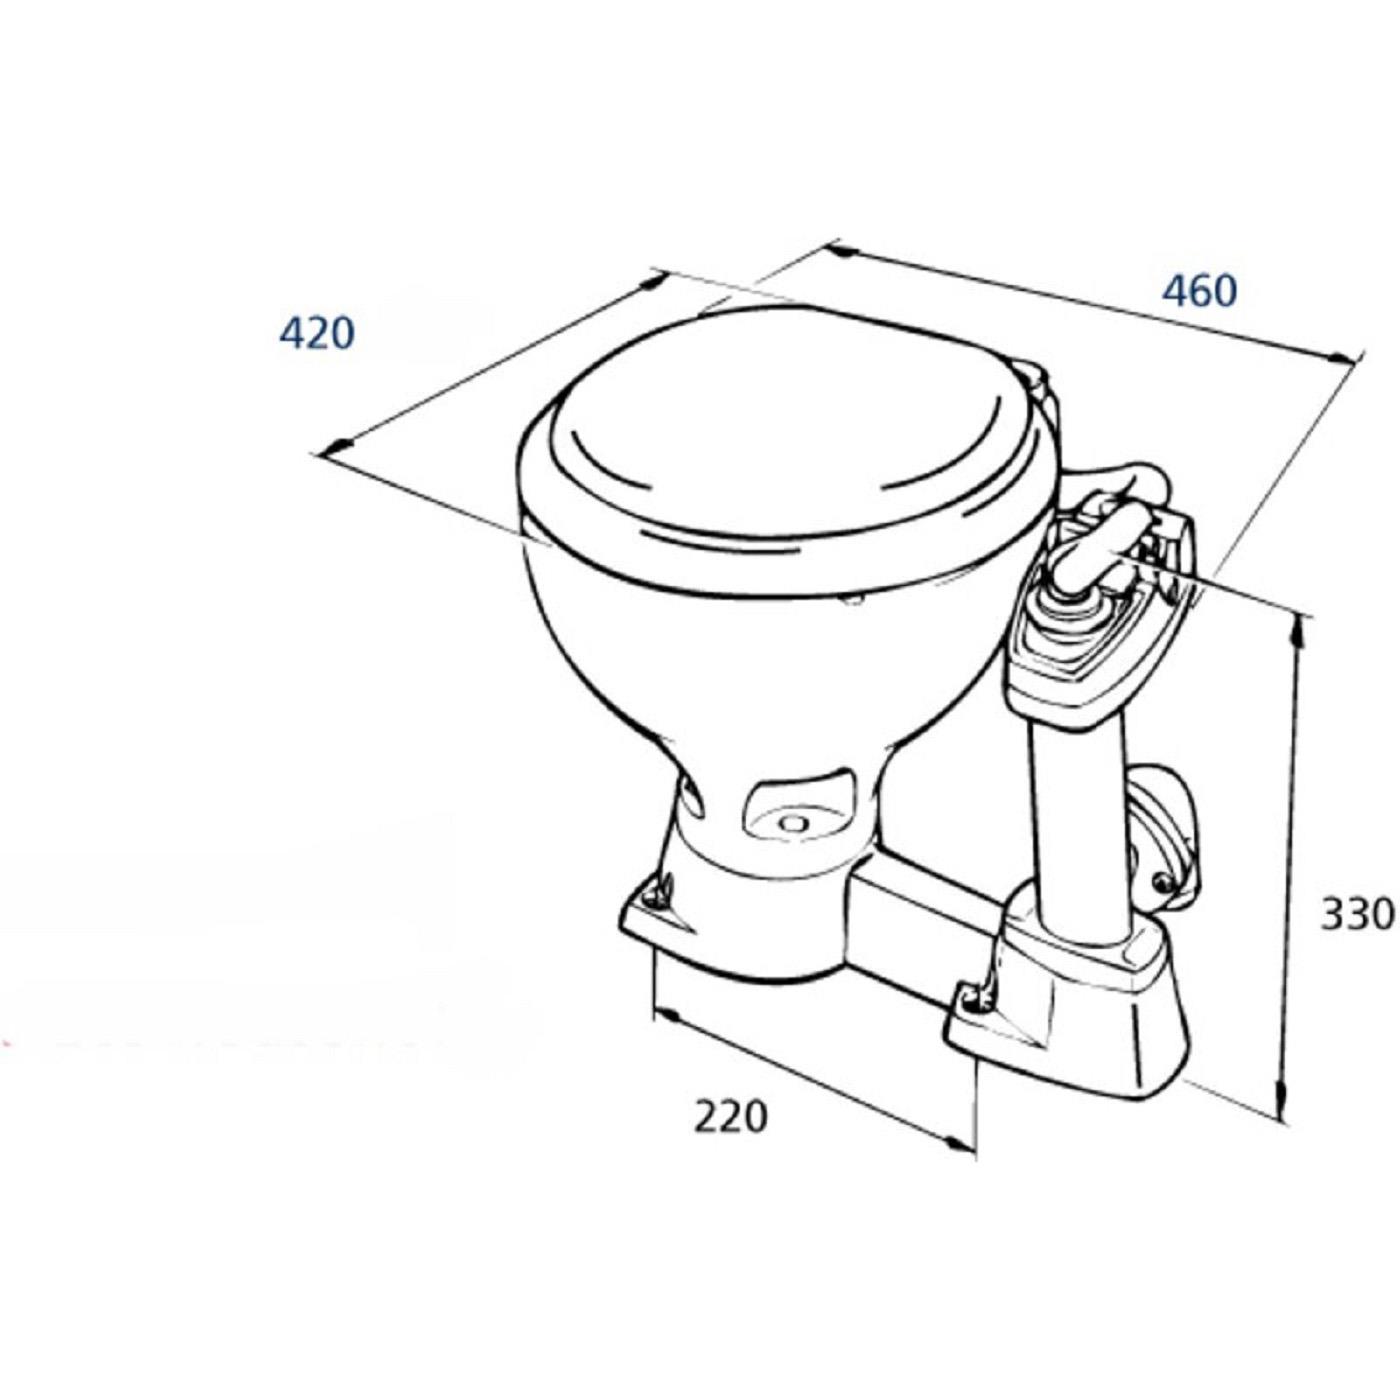 RM69 RM011 Sealock Toilette, Kleines Becken, Sitzgarnitur Kunststoff